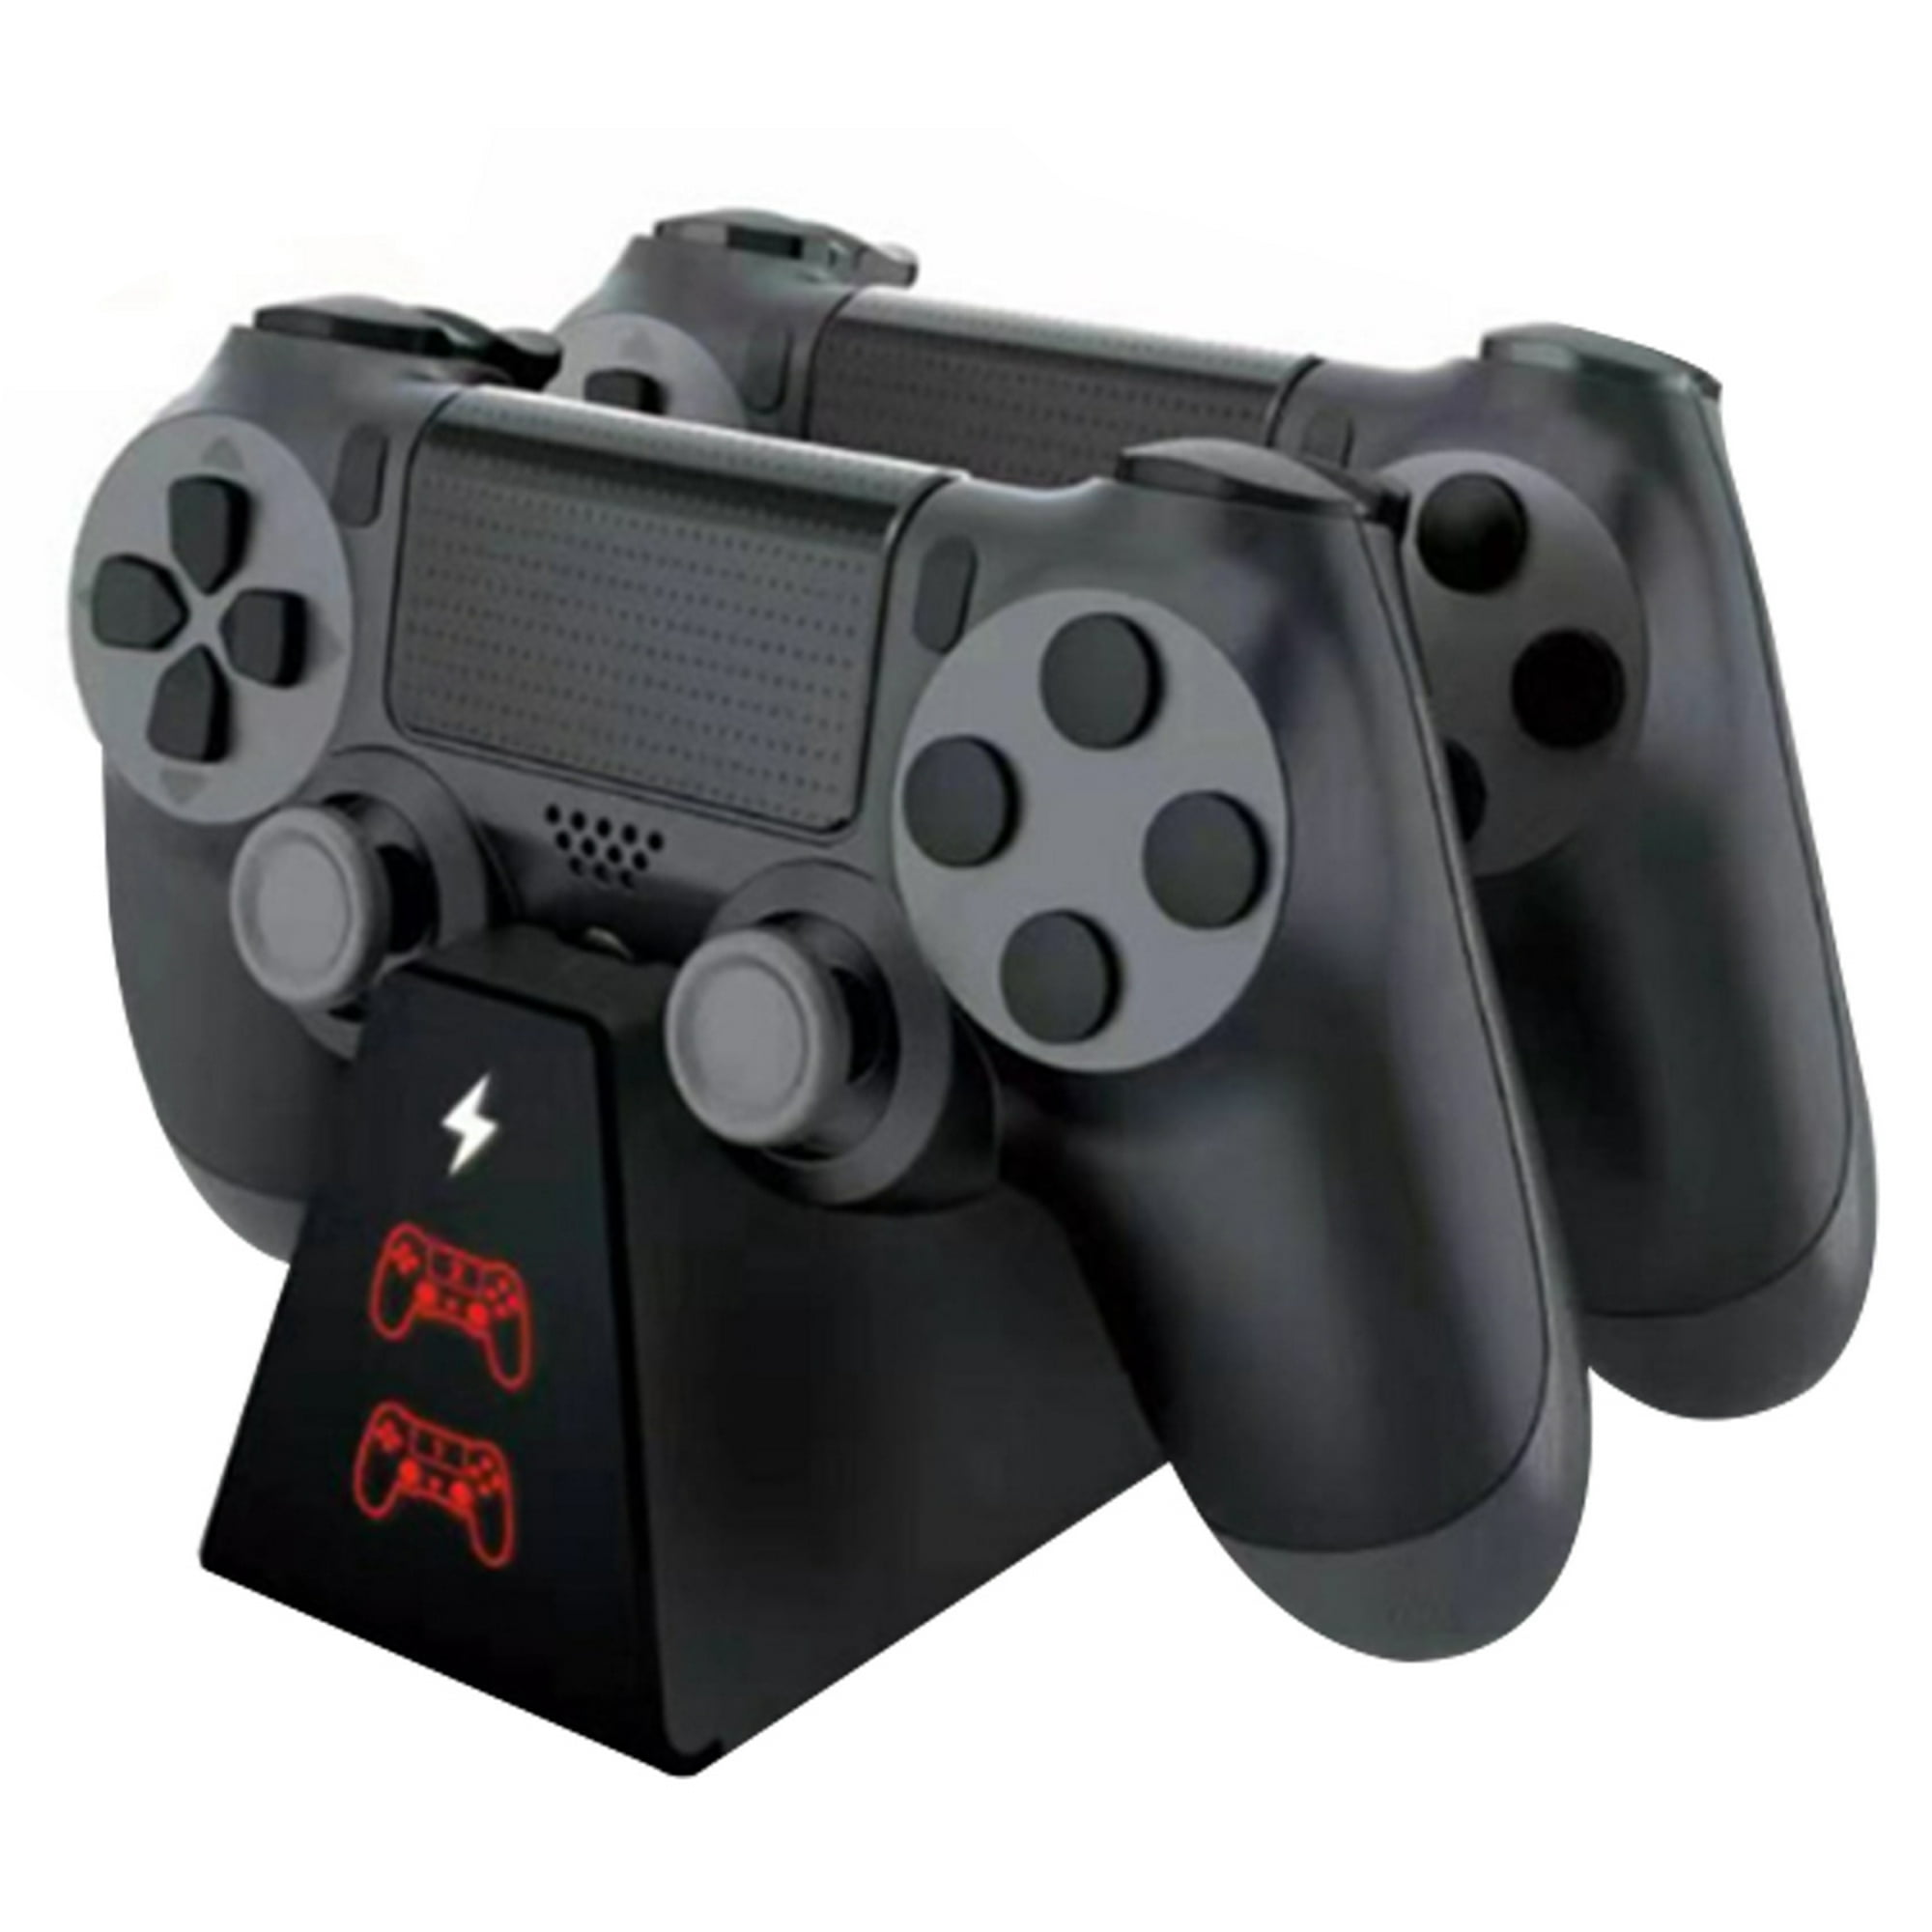 Cargador para controles de PS4 YTEAM® PlayStation 4/PS4 Pro/PS4 Slim.  Estación de carga rápida dual con indicador LED y soporte para controles de  Sony